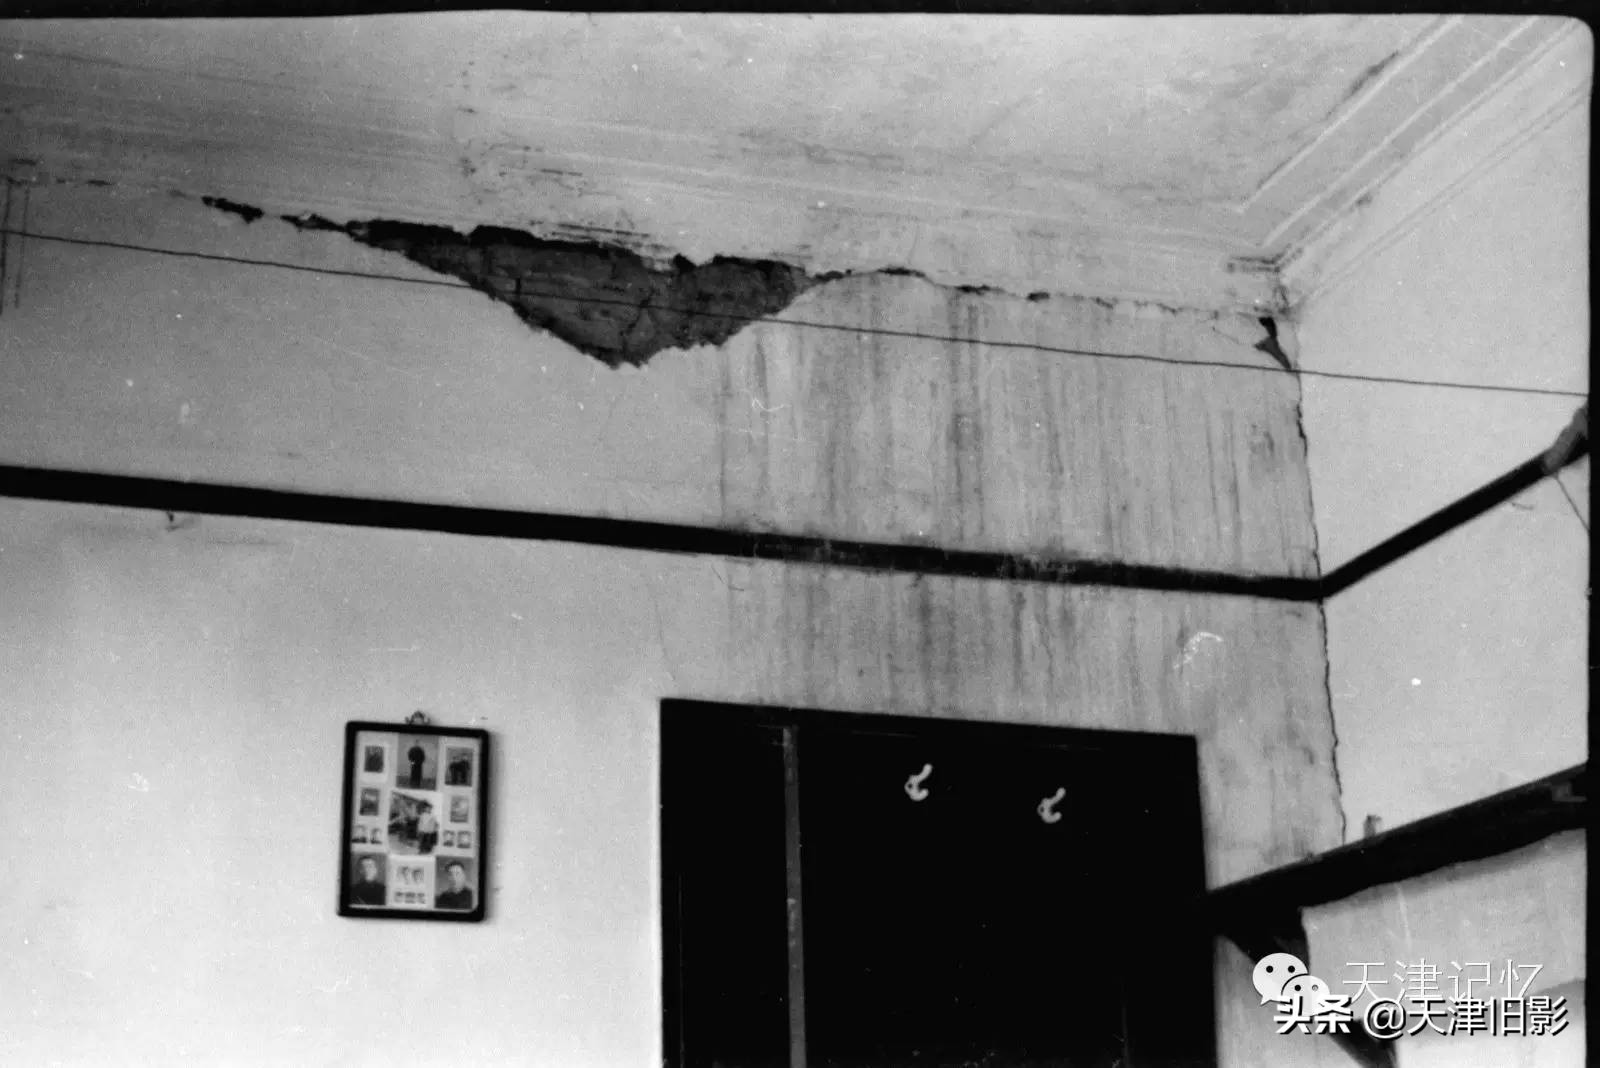 唐山地震发生在哪一年几月几号,唐山地震发生的具体时间